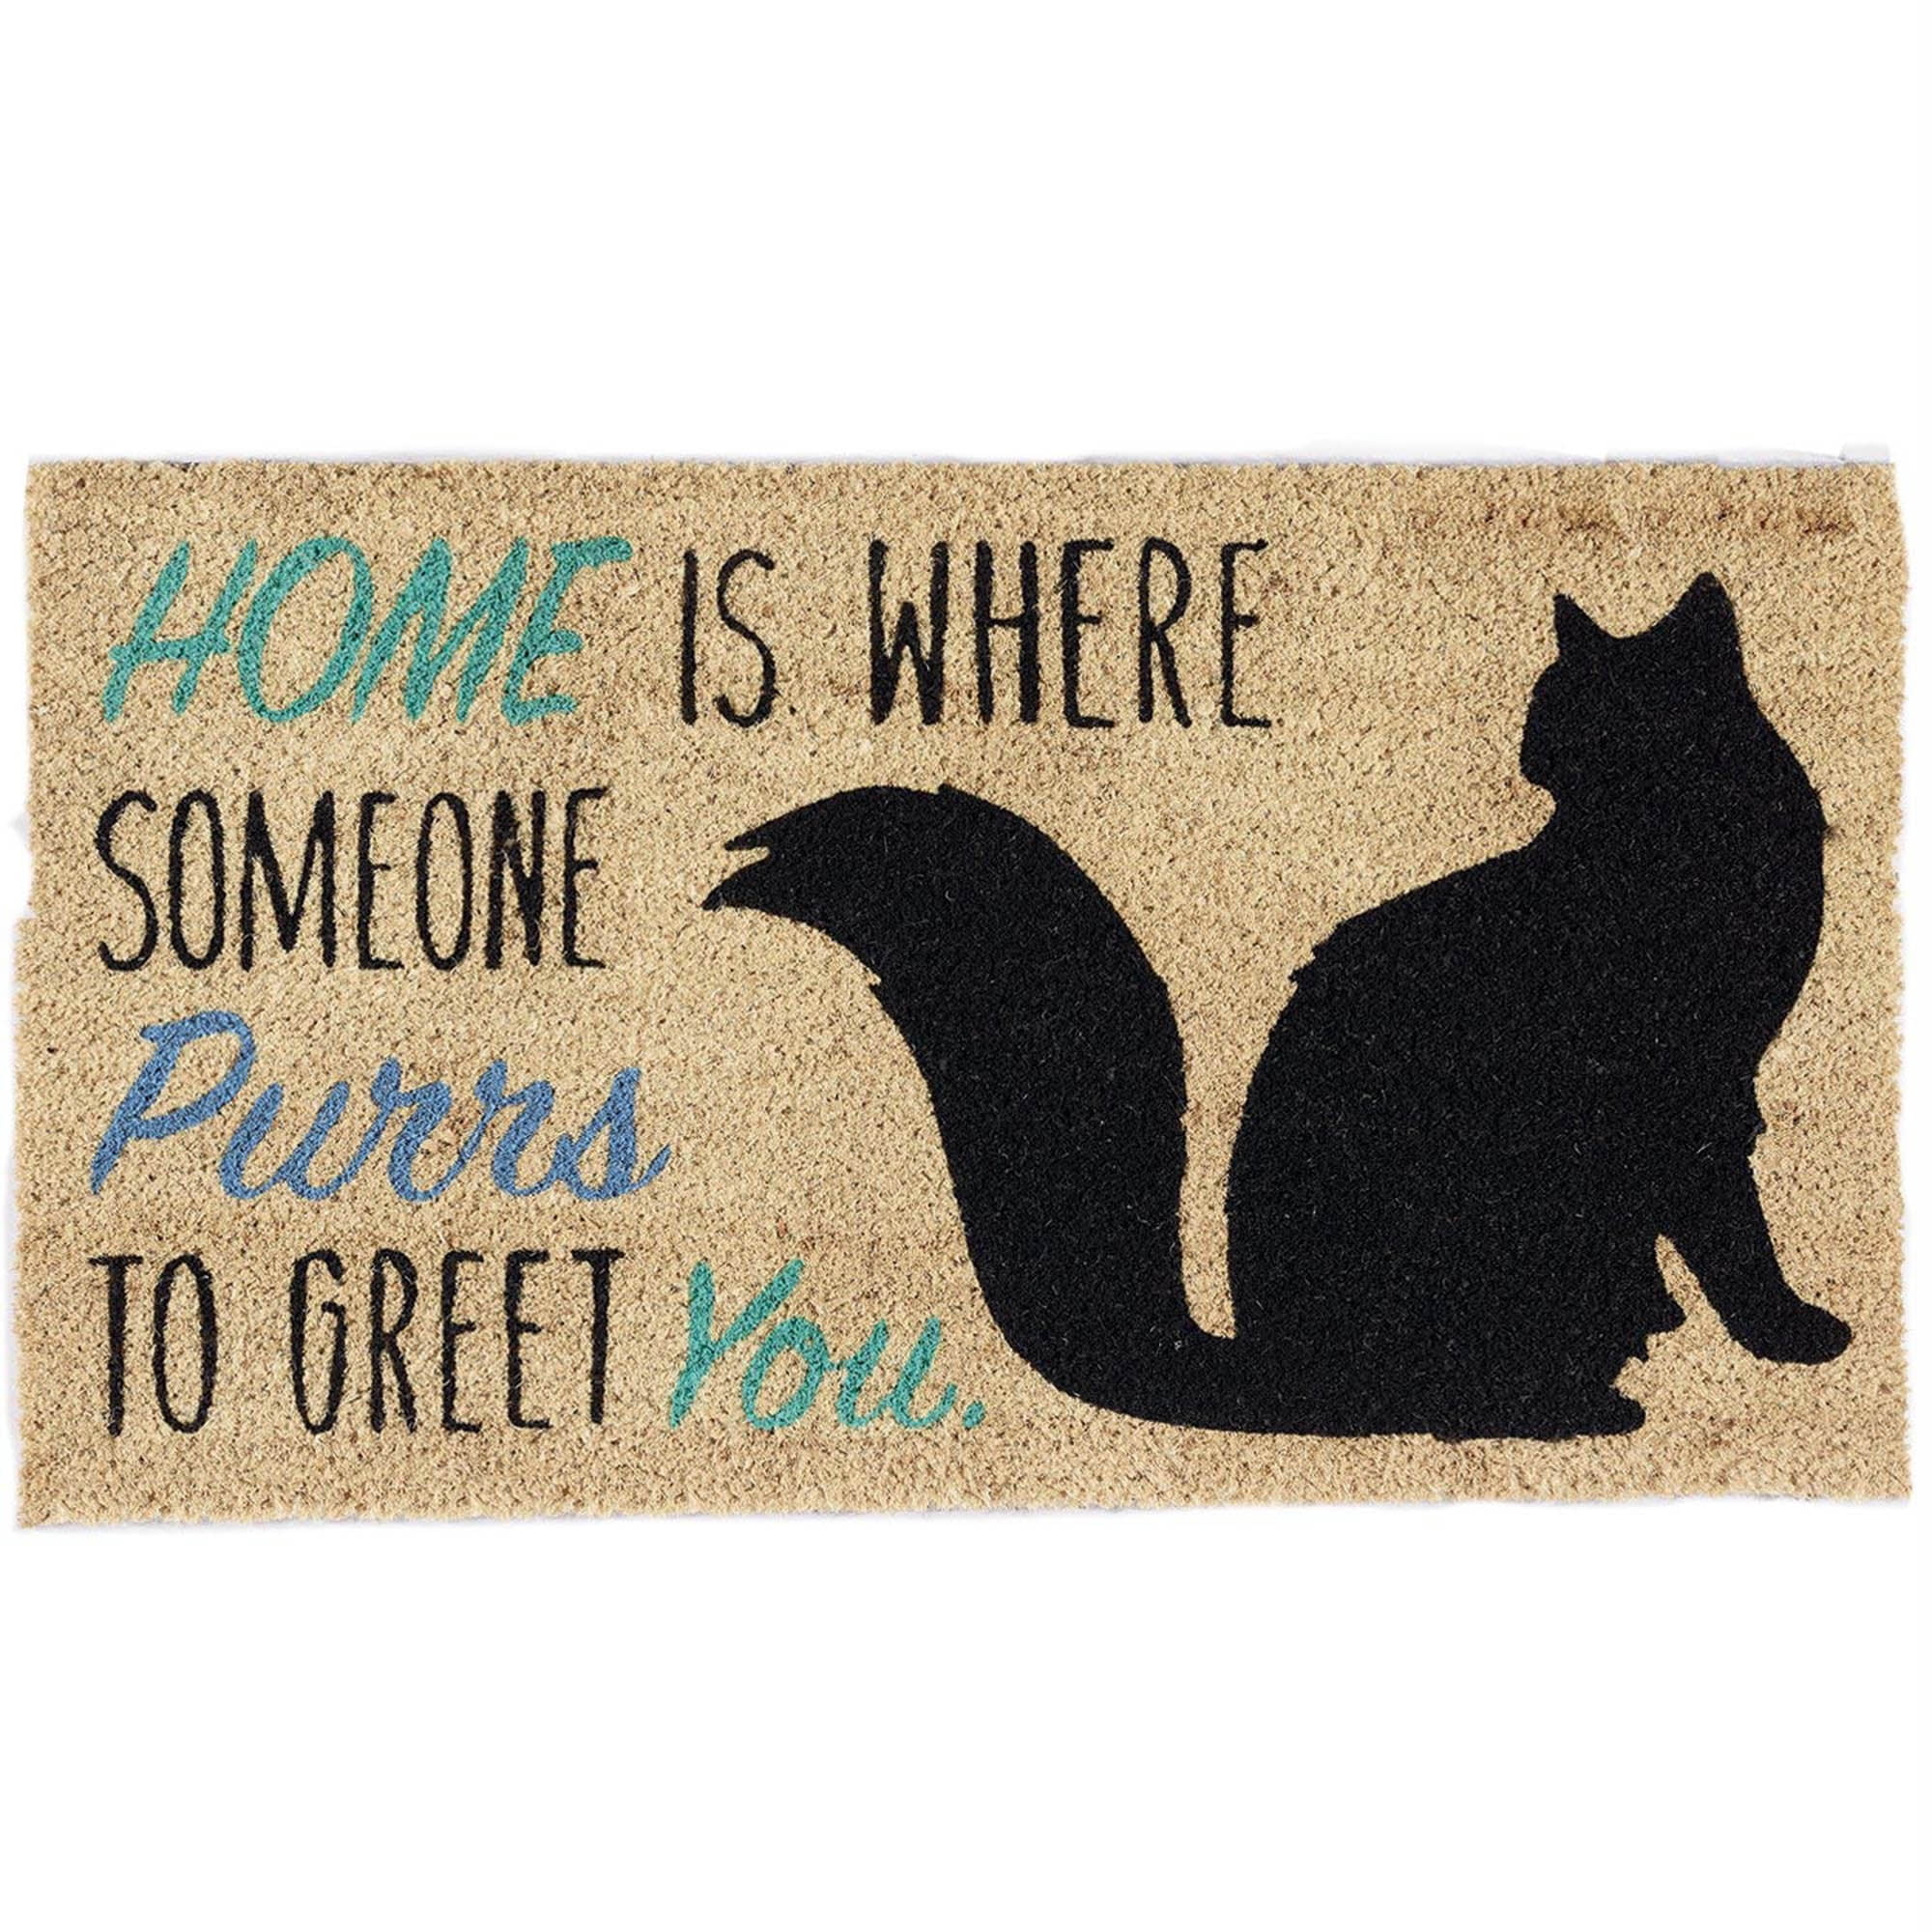 Welcome to Meow Manor Closing Gift Housewarming Home Doormat Welcome Mat Funny Door Mat Funny Gift Cute Cat Black Cat Doormat